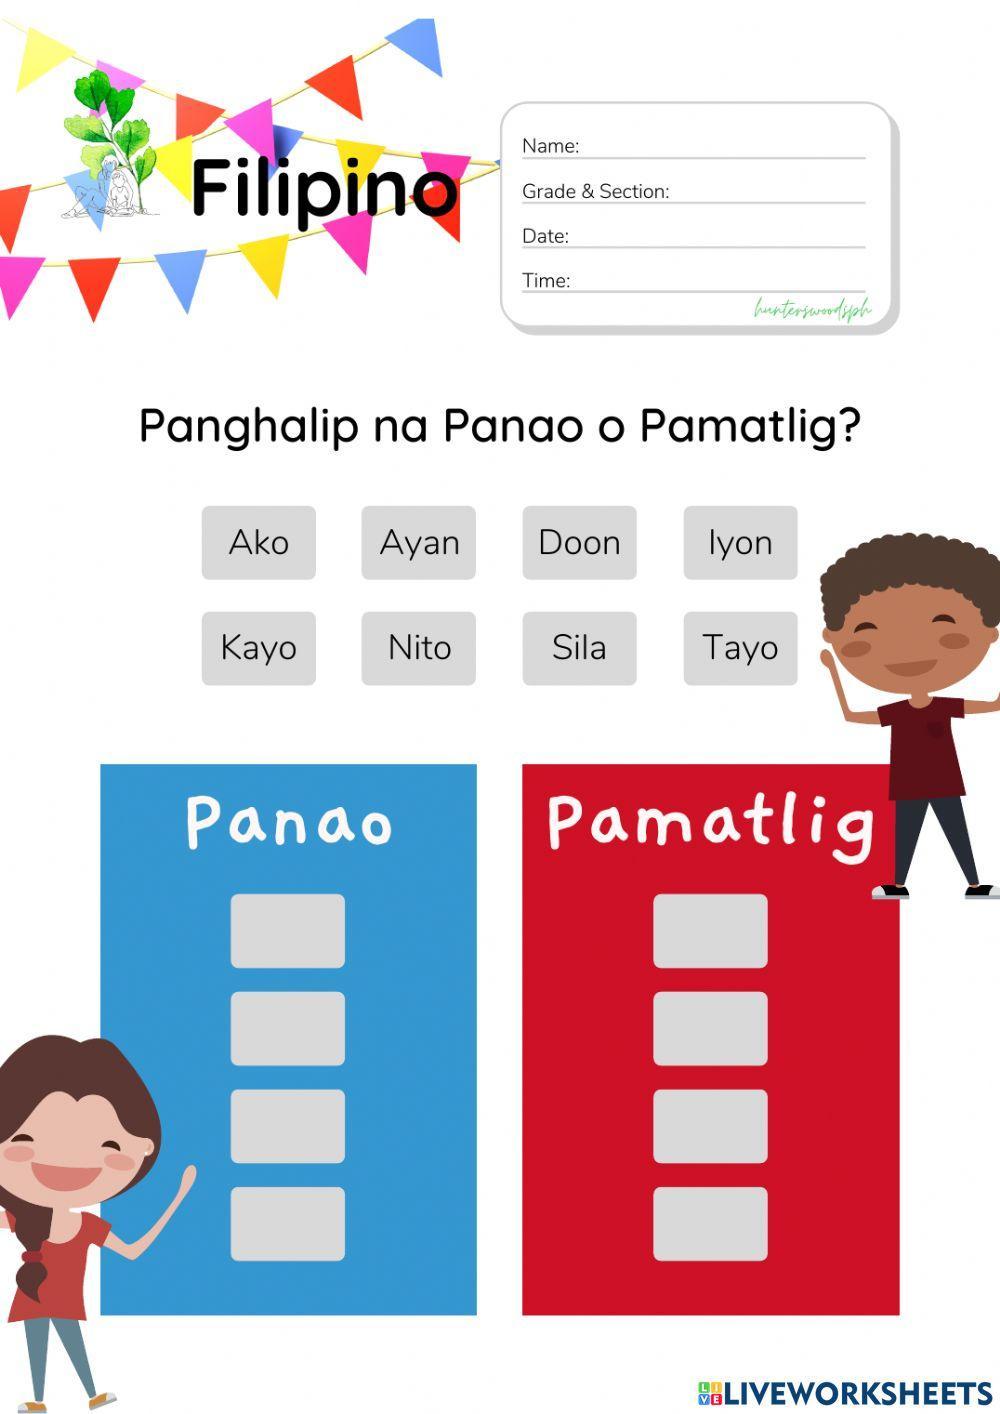 Panghalip na Pamatlig (HuntersWoodsPH Montessori Filipino)